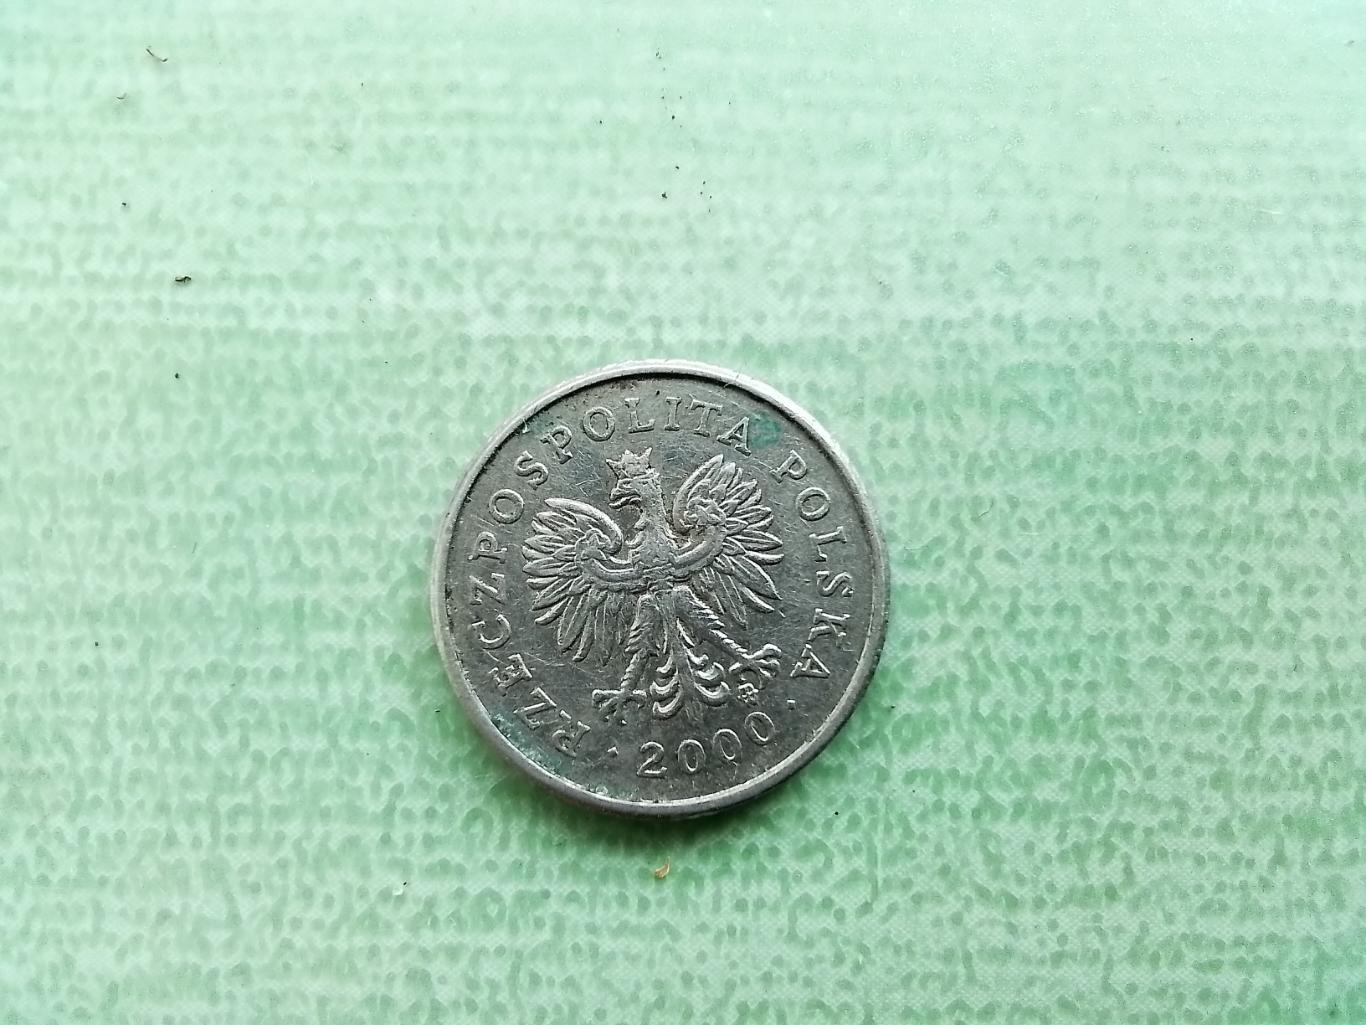 10 грошей Польша 2000 1